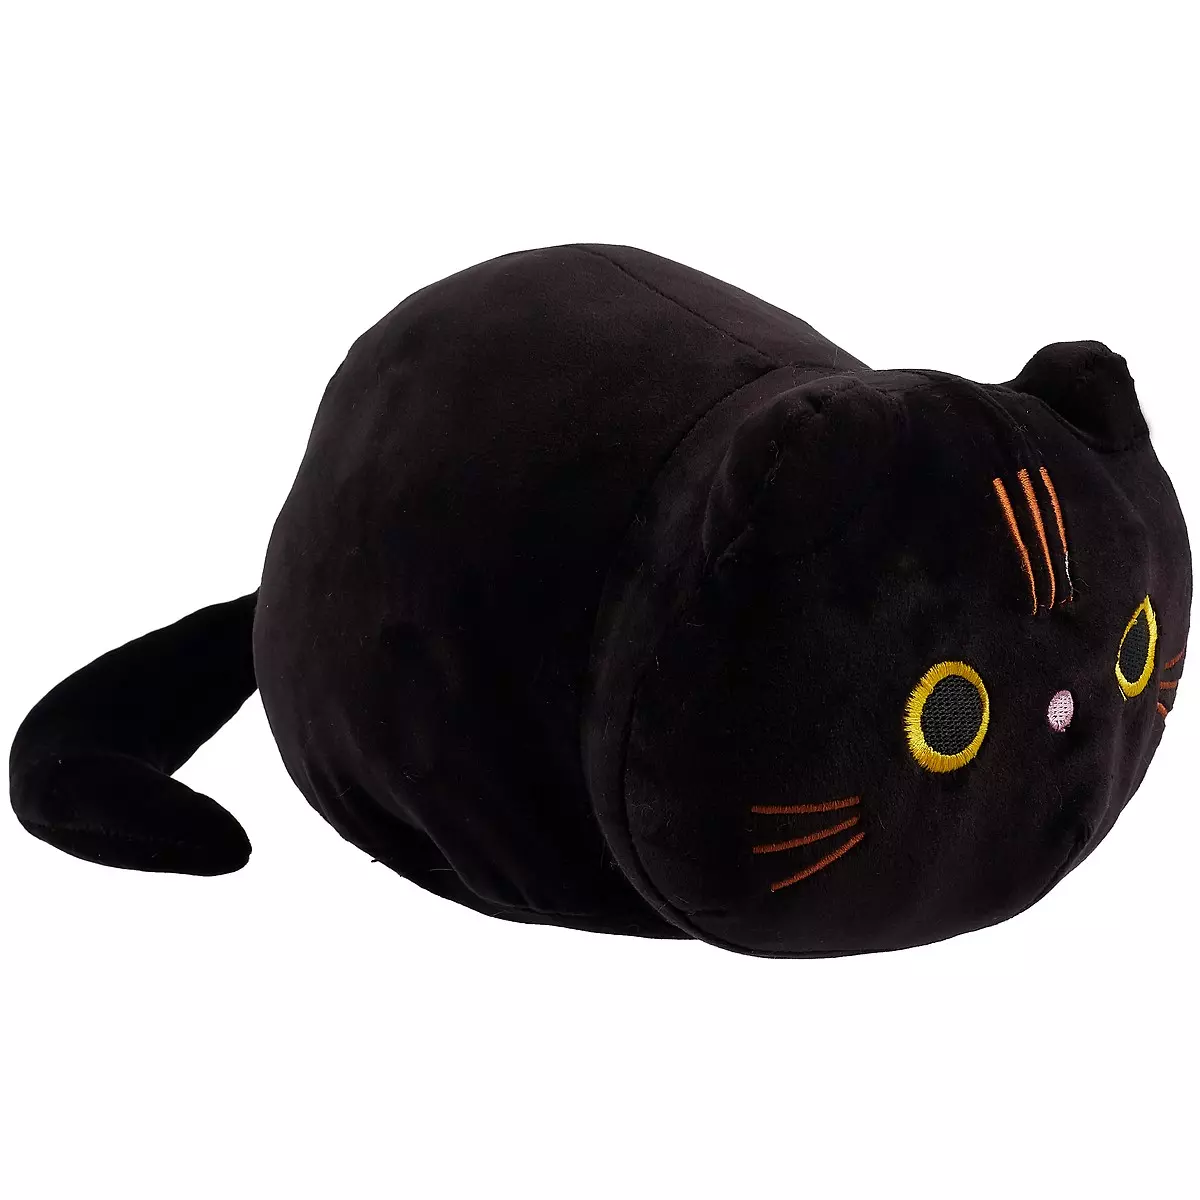 Популярные черные коты-игрушки для коллекционирования